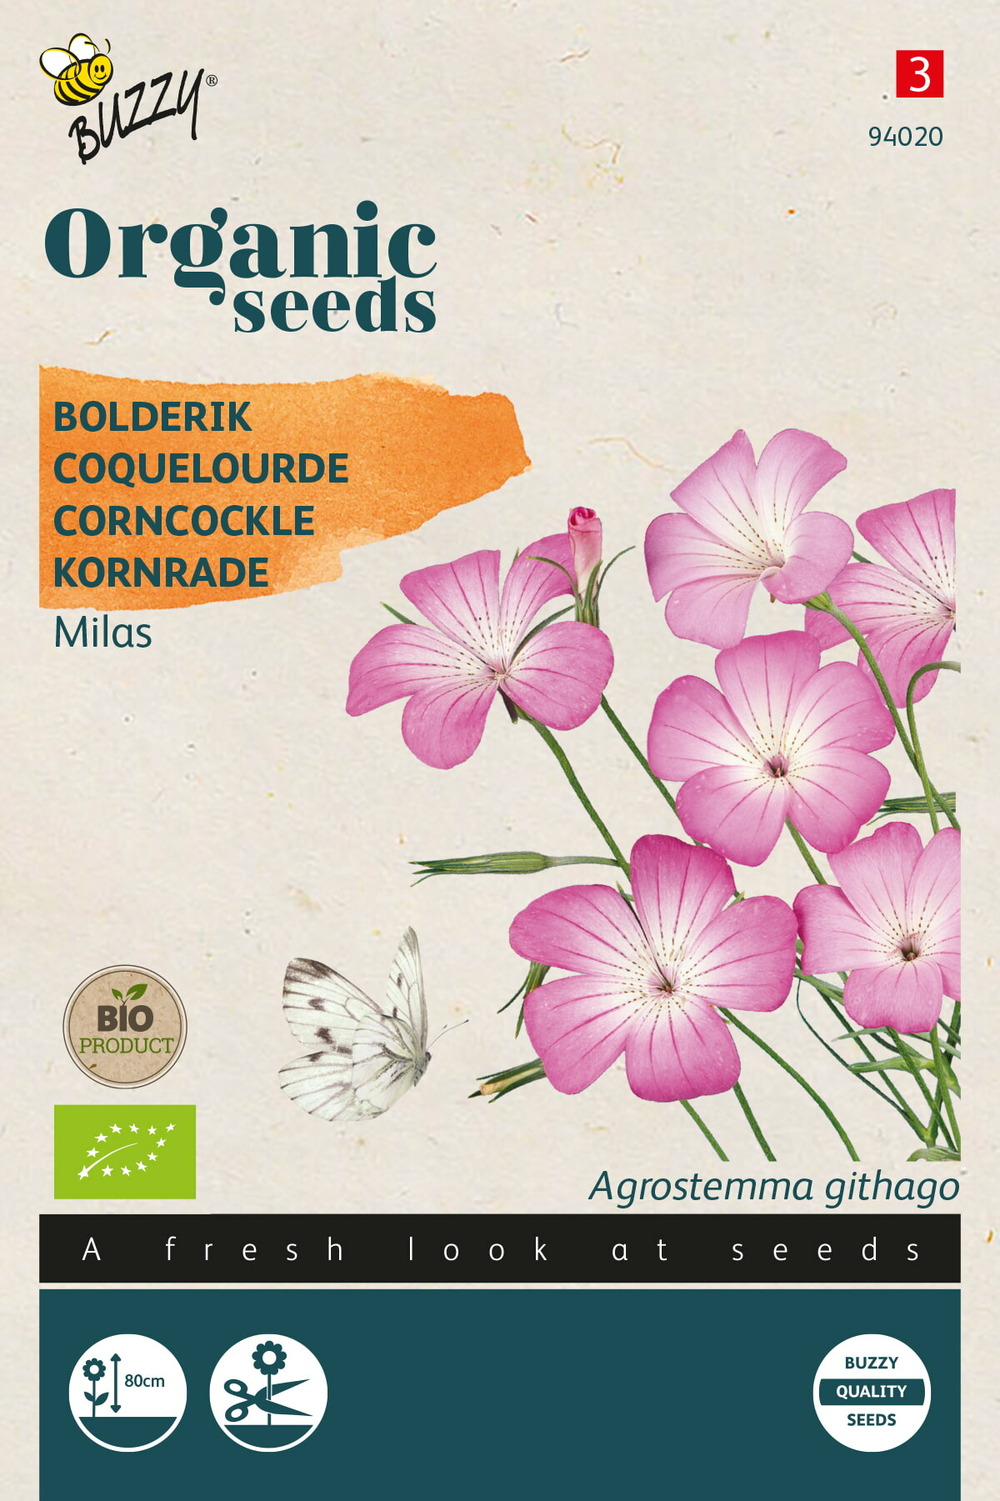 Buzzy® organic agrostemma, coquelourde milas (bio) - ca. 1 gr